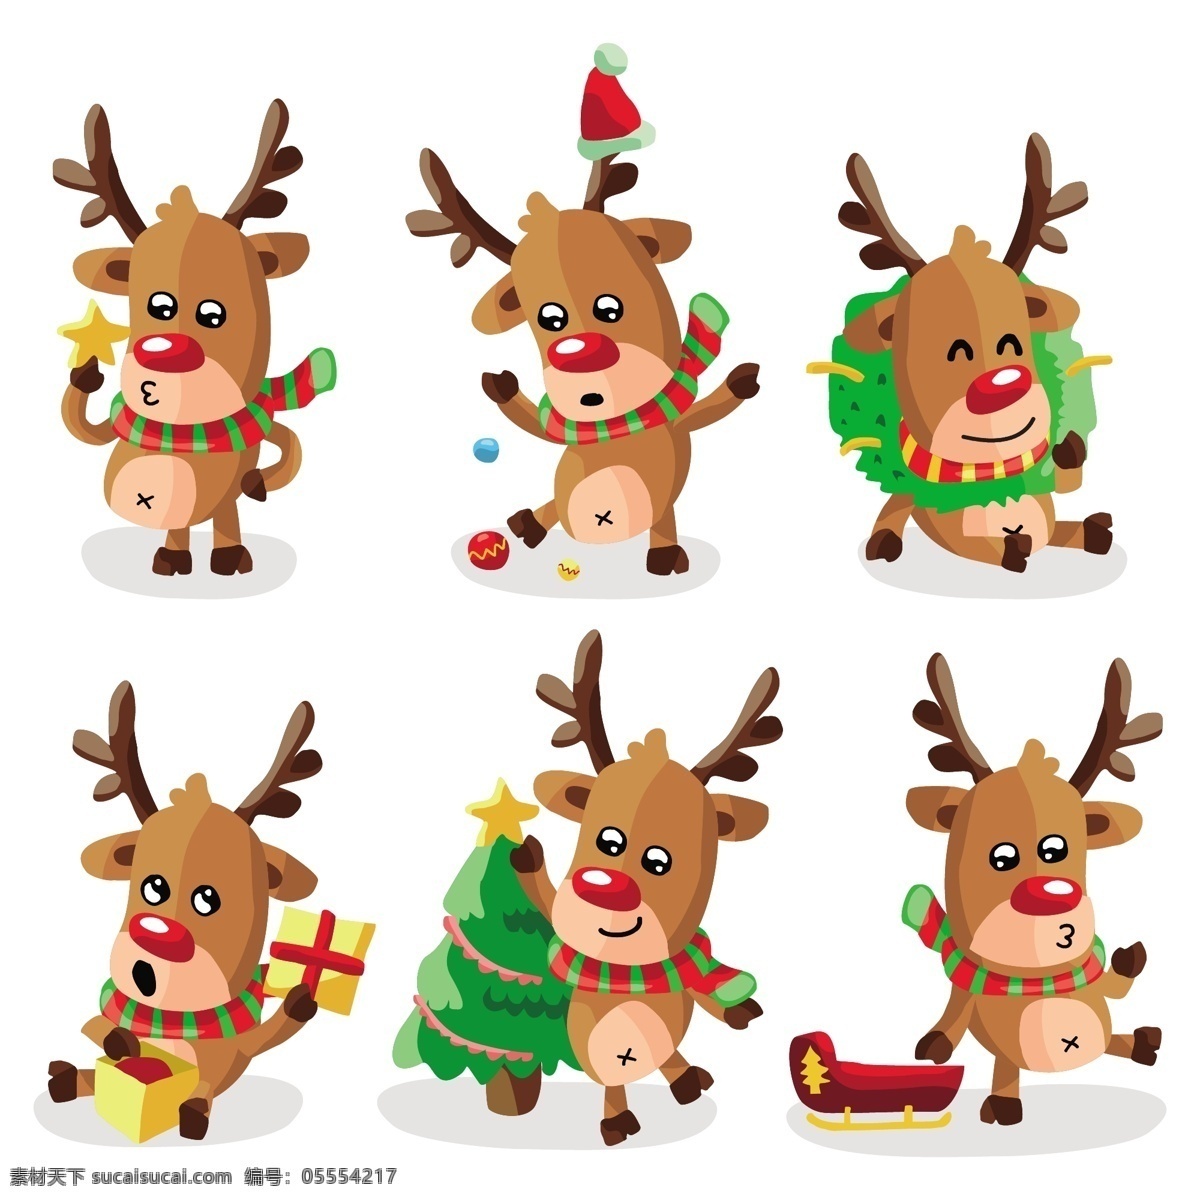 款 卡通 圣诞 麋鹿 元素 卡通麋鹿 6款麋鹿 圣诞麋鹿 圣诞元素下载 卡通圣诞元素 圣诞素材 圣诞帽 圣诞礼物 圣诞袜 节日元素 2017圣诞